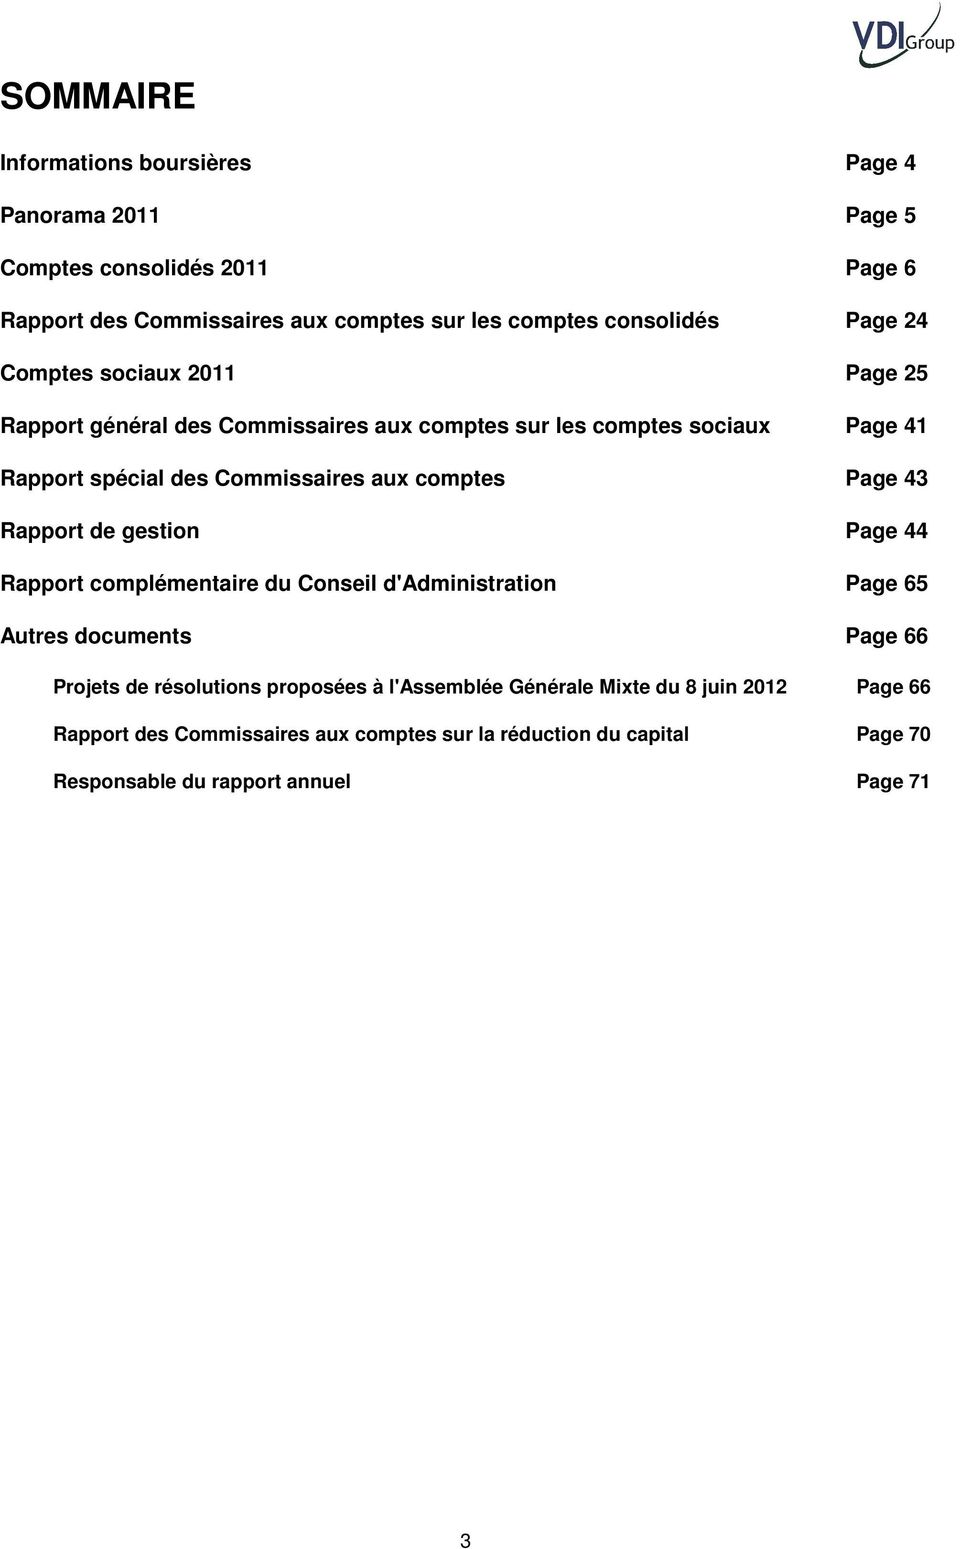 comptes Page 43 Rapport de gestion Page 44 Rapport complémentaire du Conseil d'administration Page 65 Autres documents Page 66 Projets de résolutions